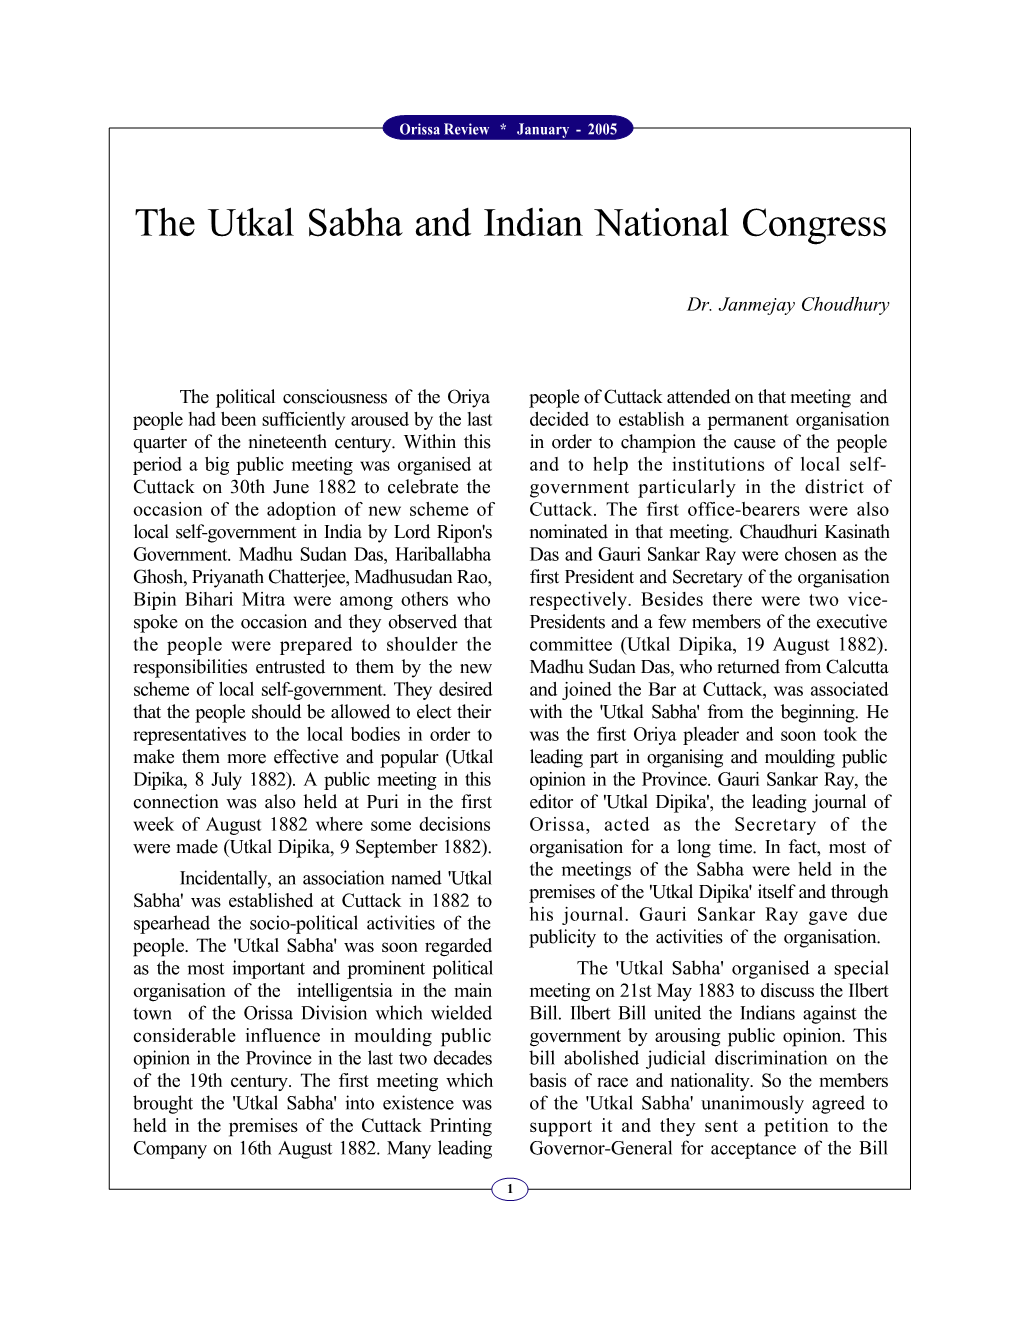 The Utkal Sabha and Indian National Congress